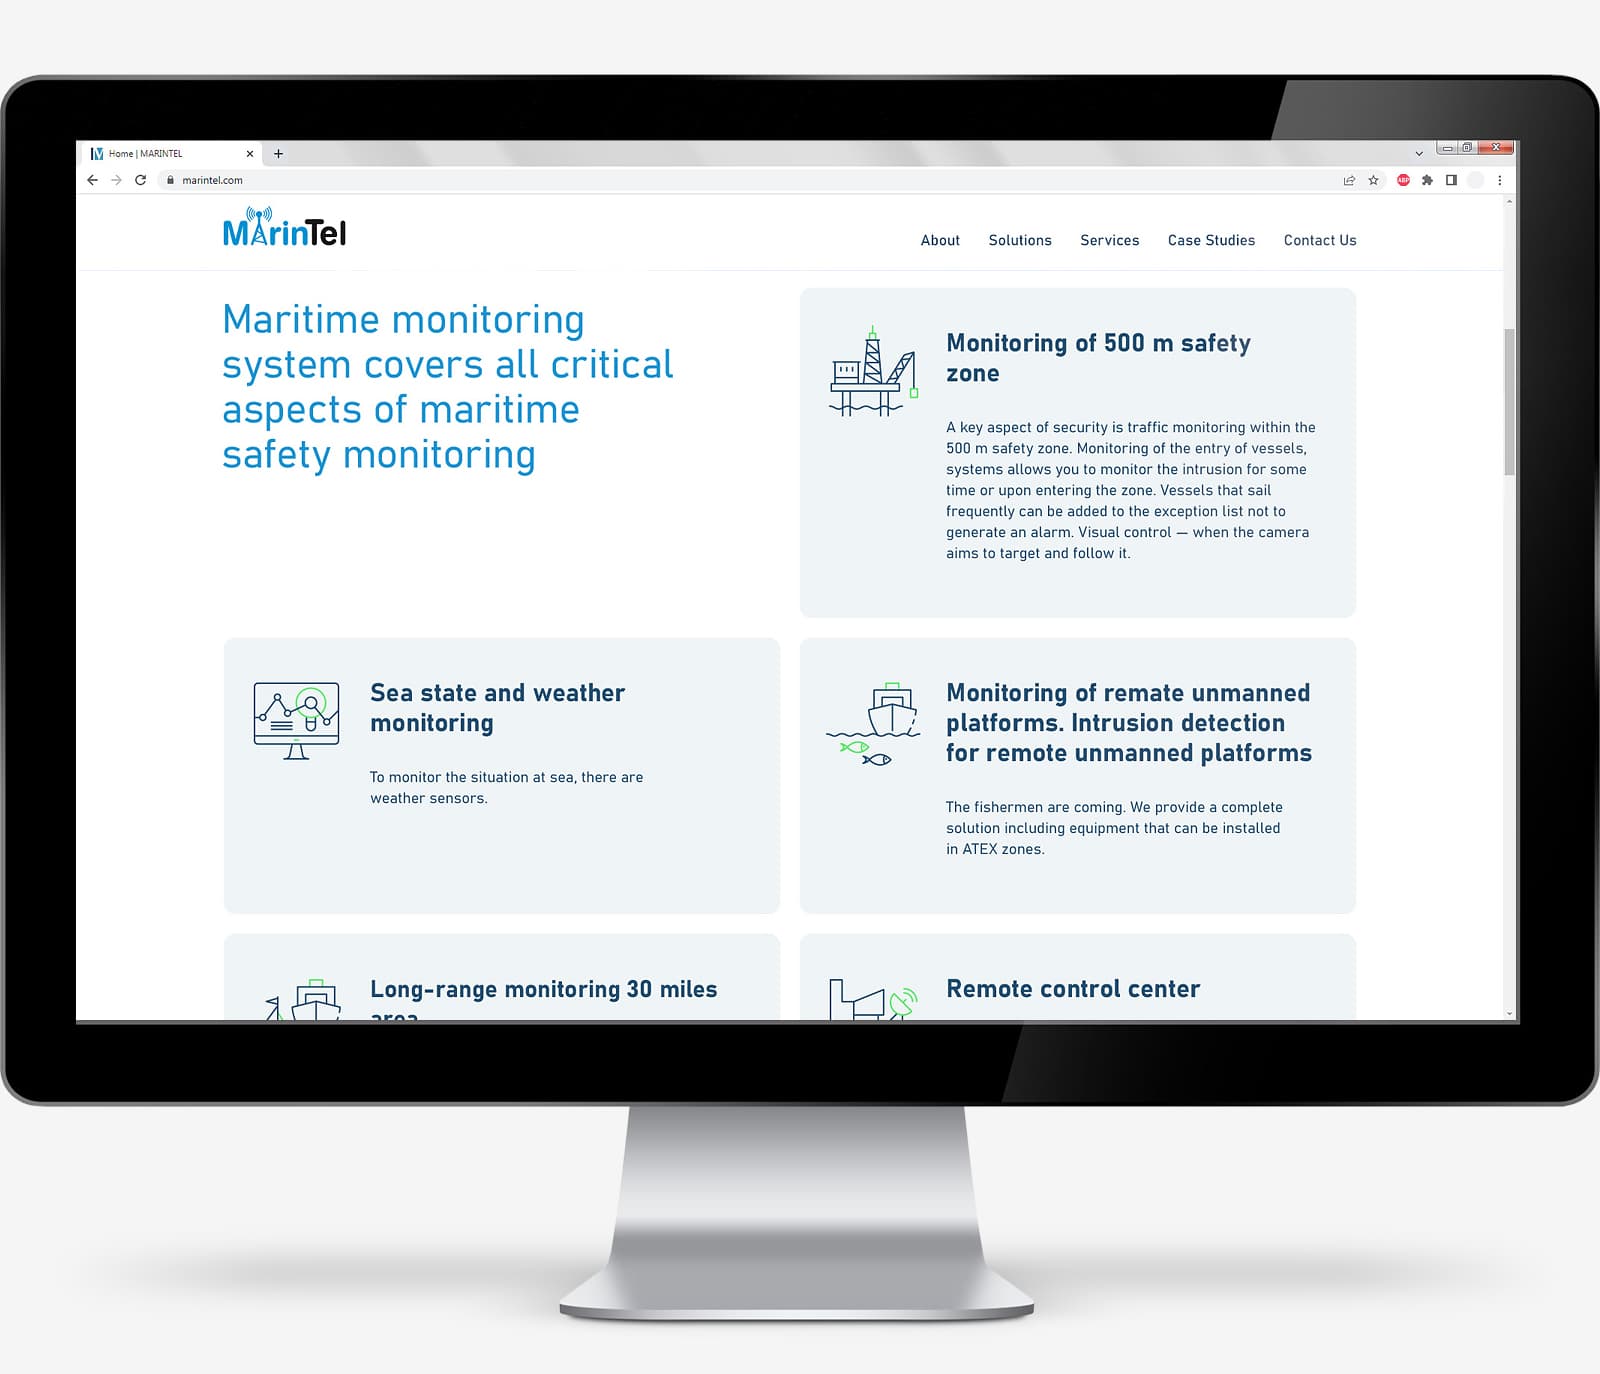 Разработка дизайна корпоративного сайта на английском языке для компании MarinTel